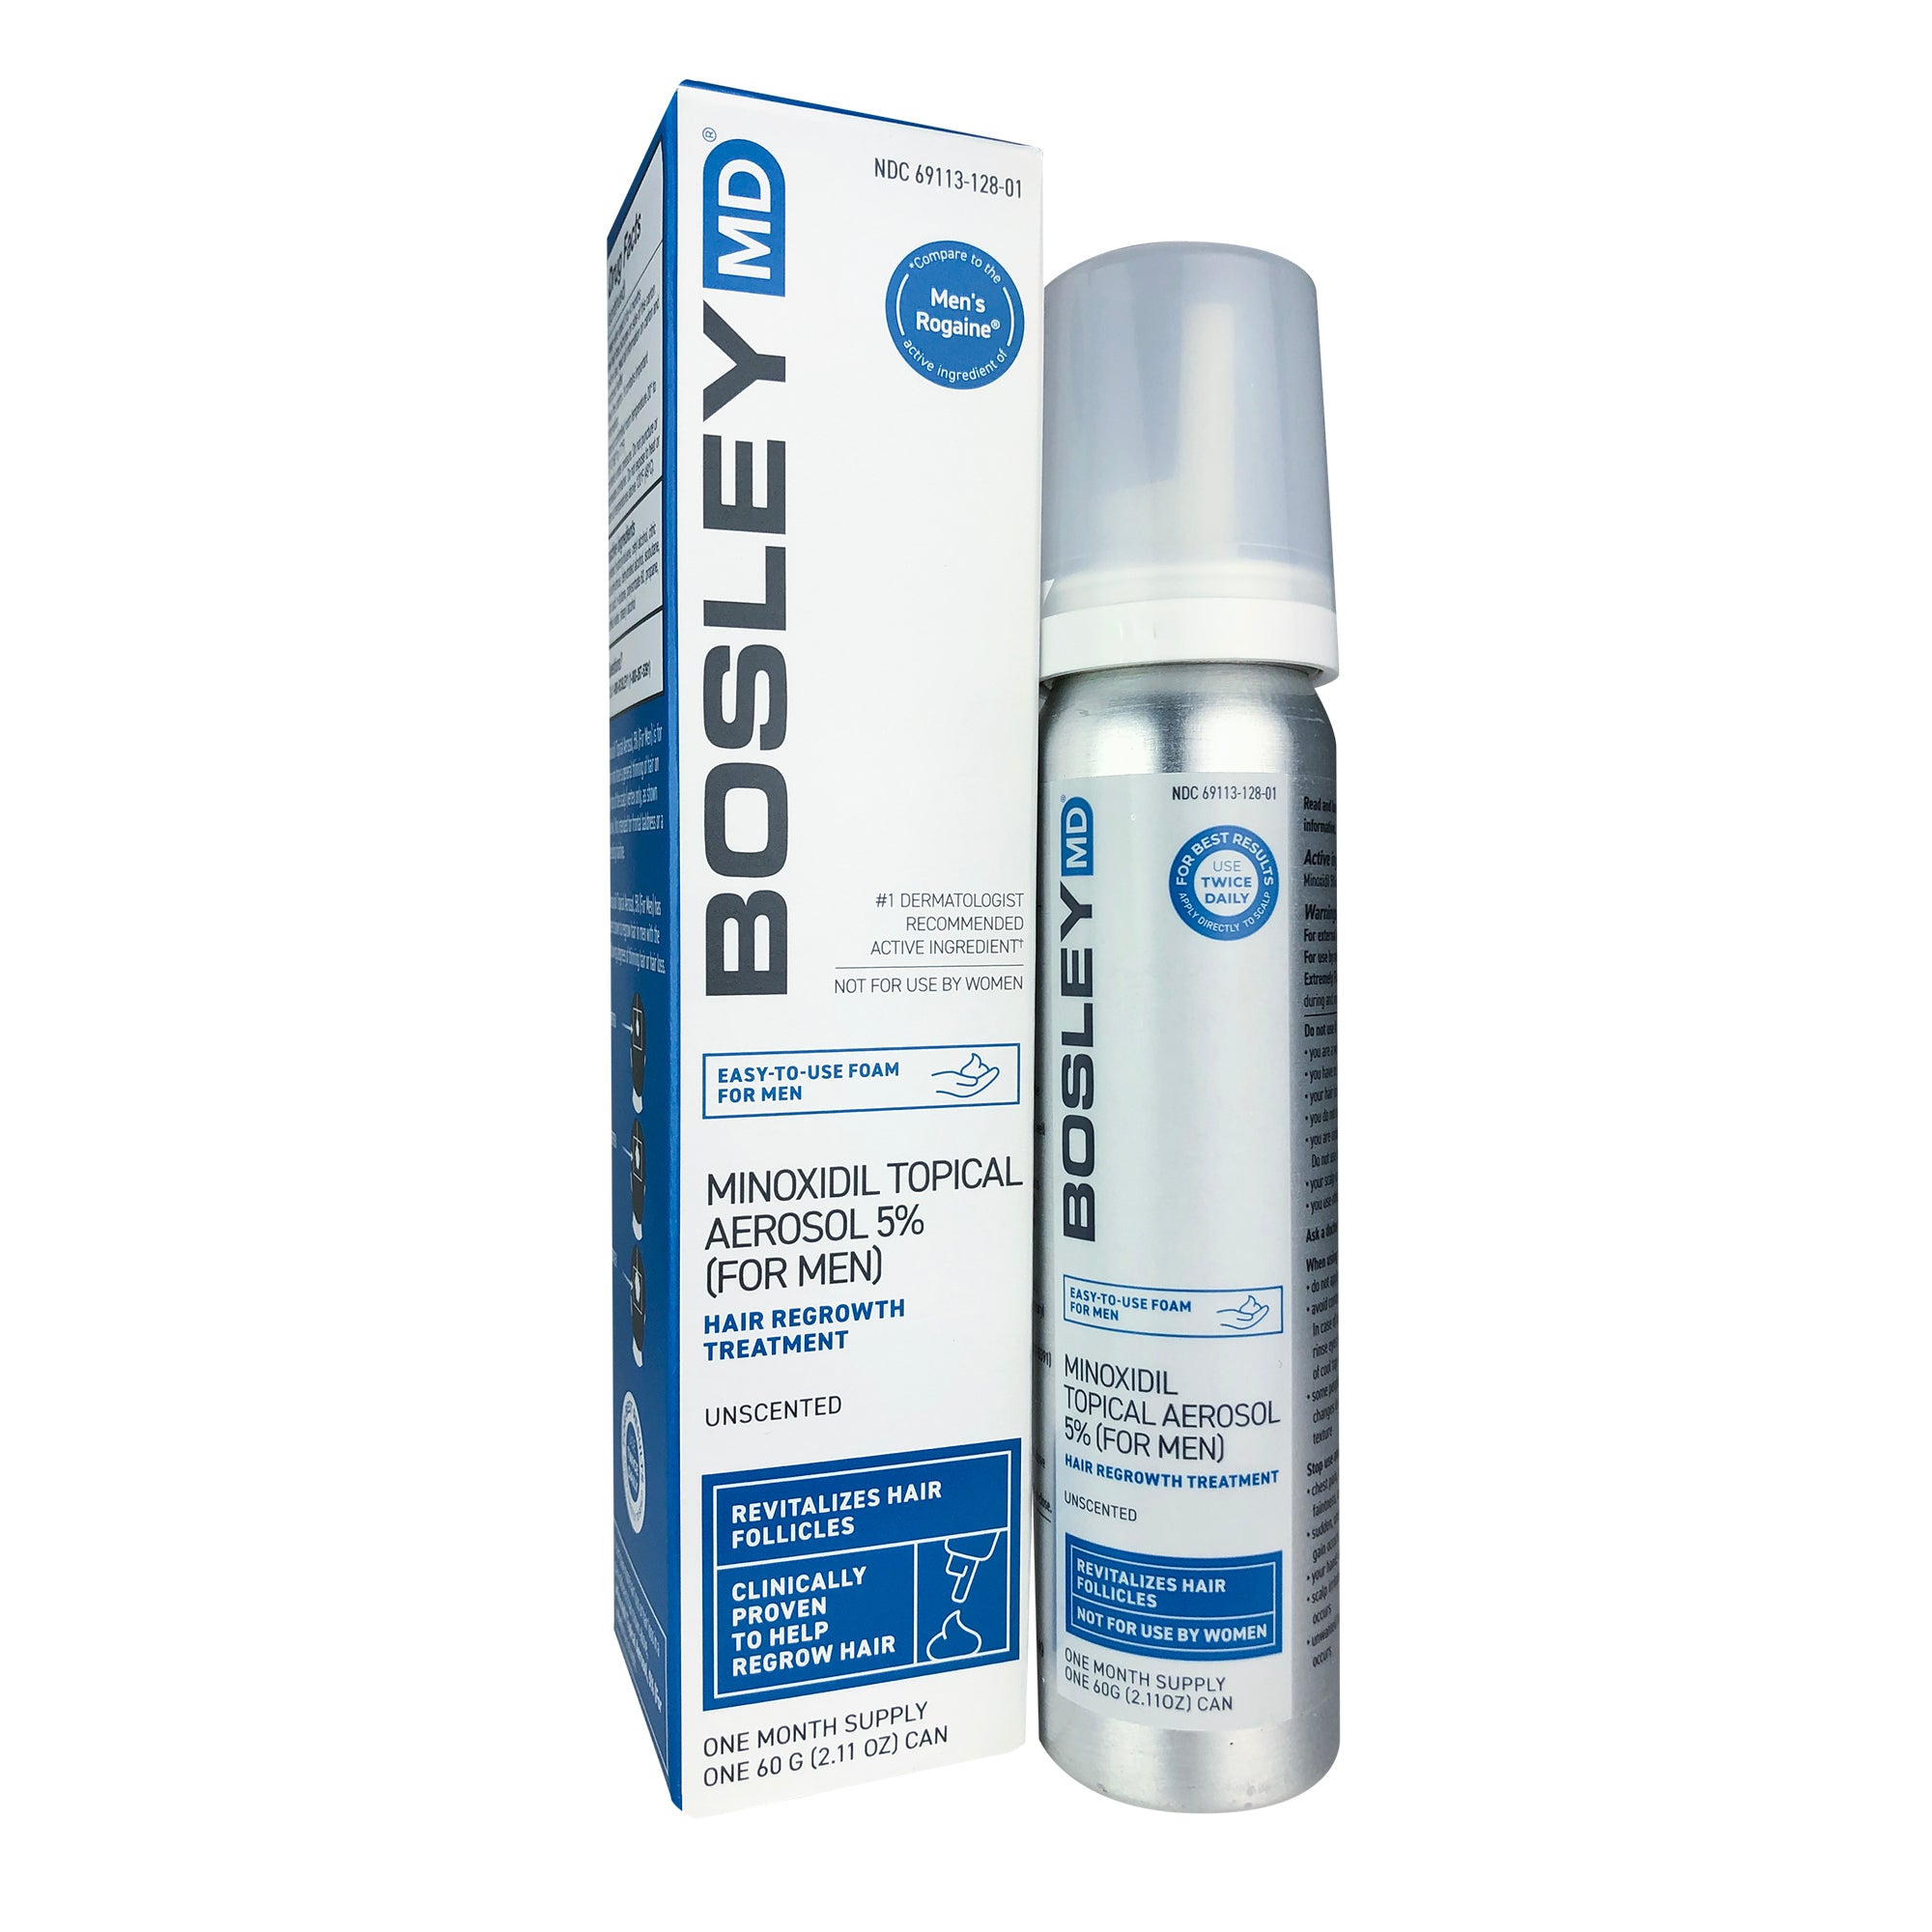 Bosley MD Hair Regrowth Treatment (5% Minoxidil Foam) for Men Spray